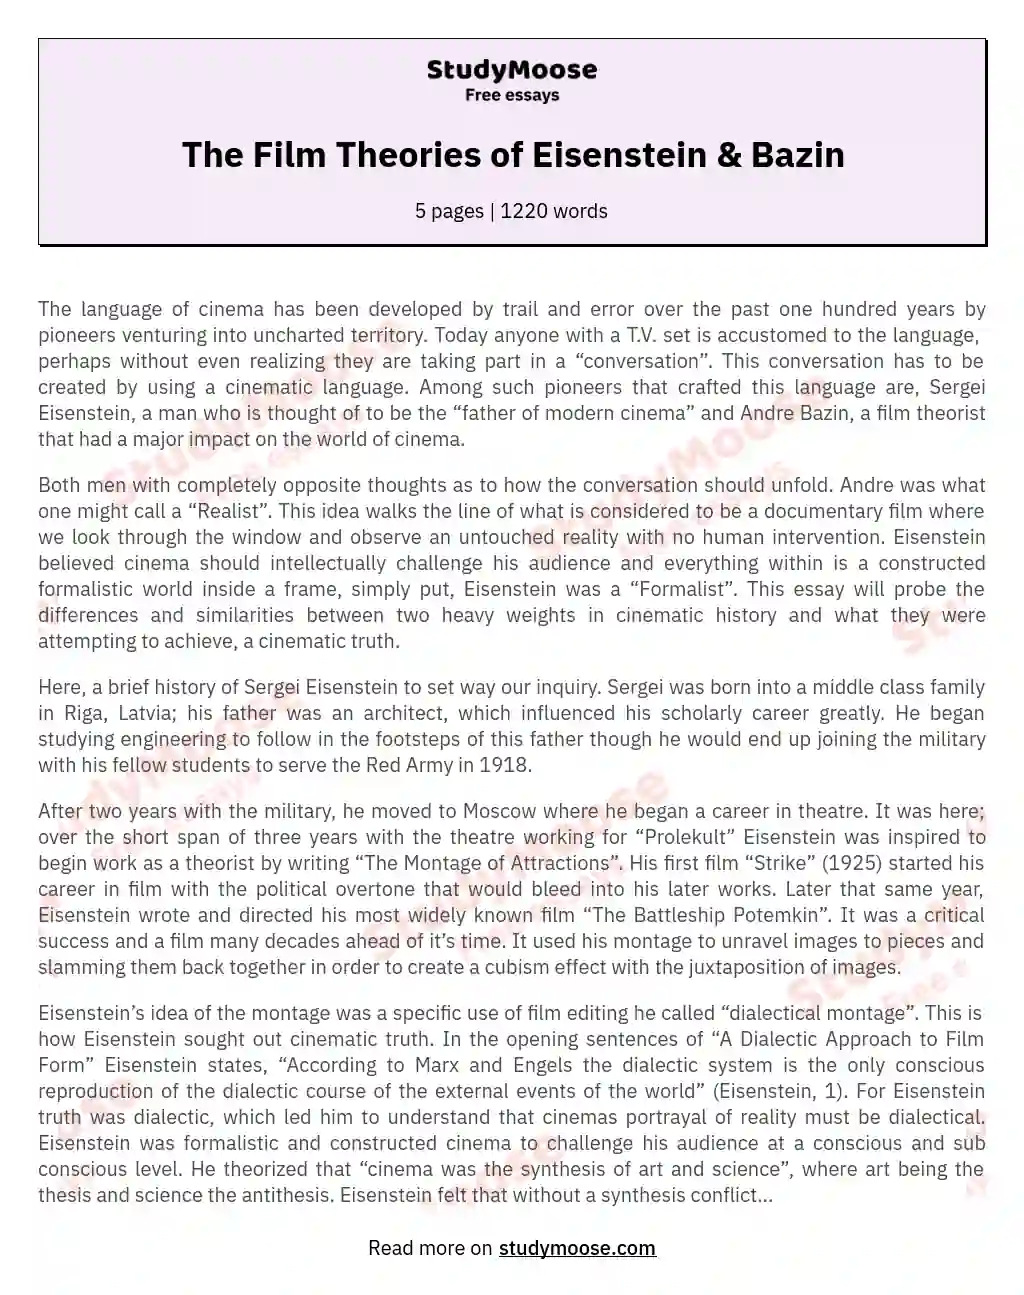 The Film Theories of Eisenstein & Bazin essay